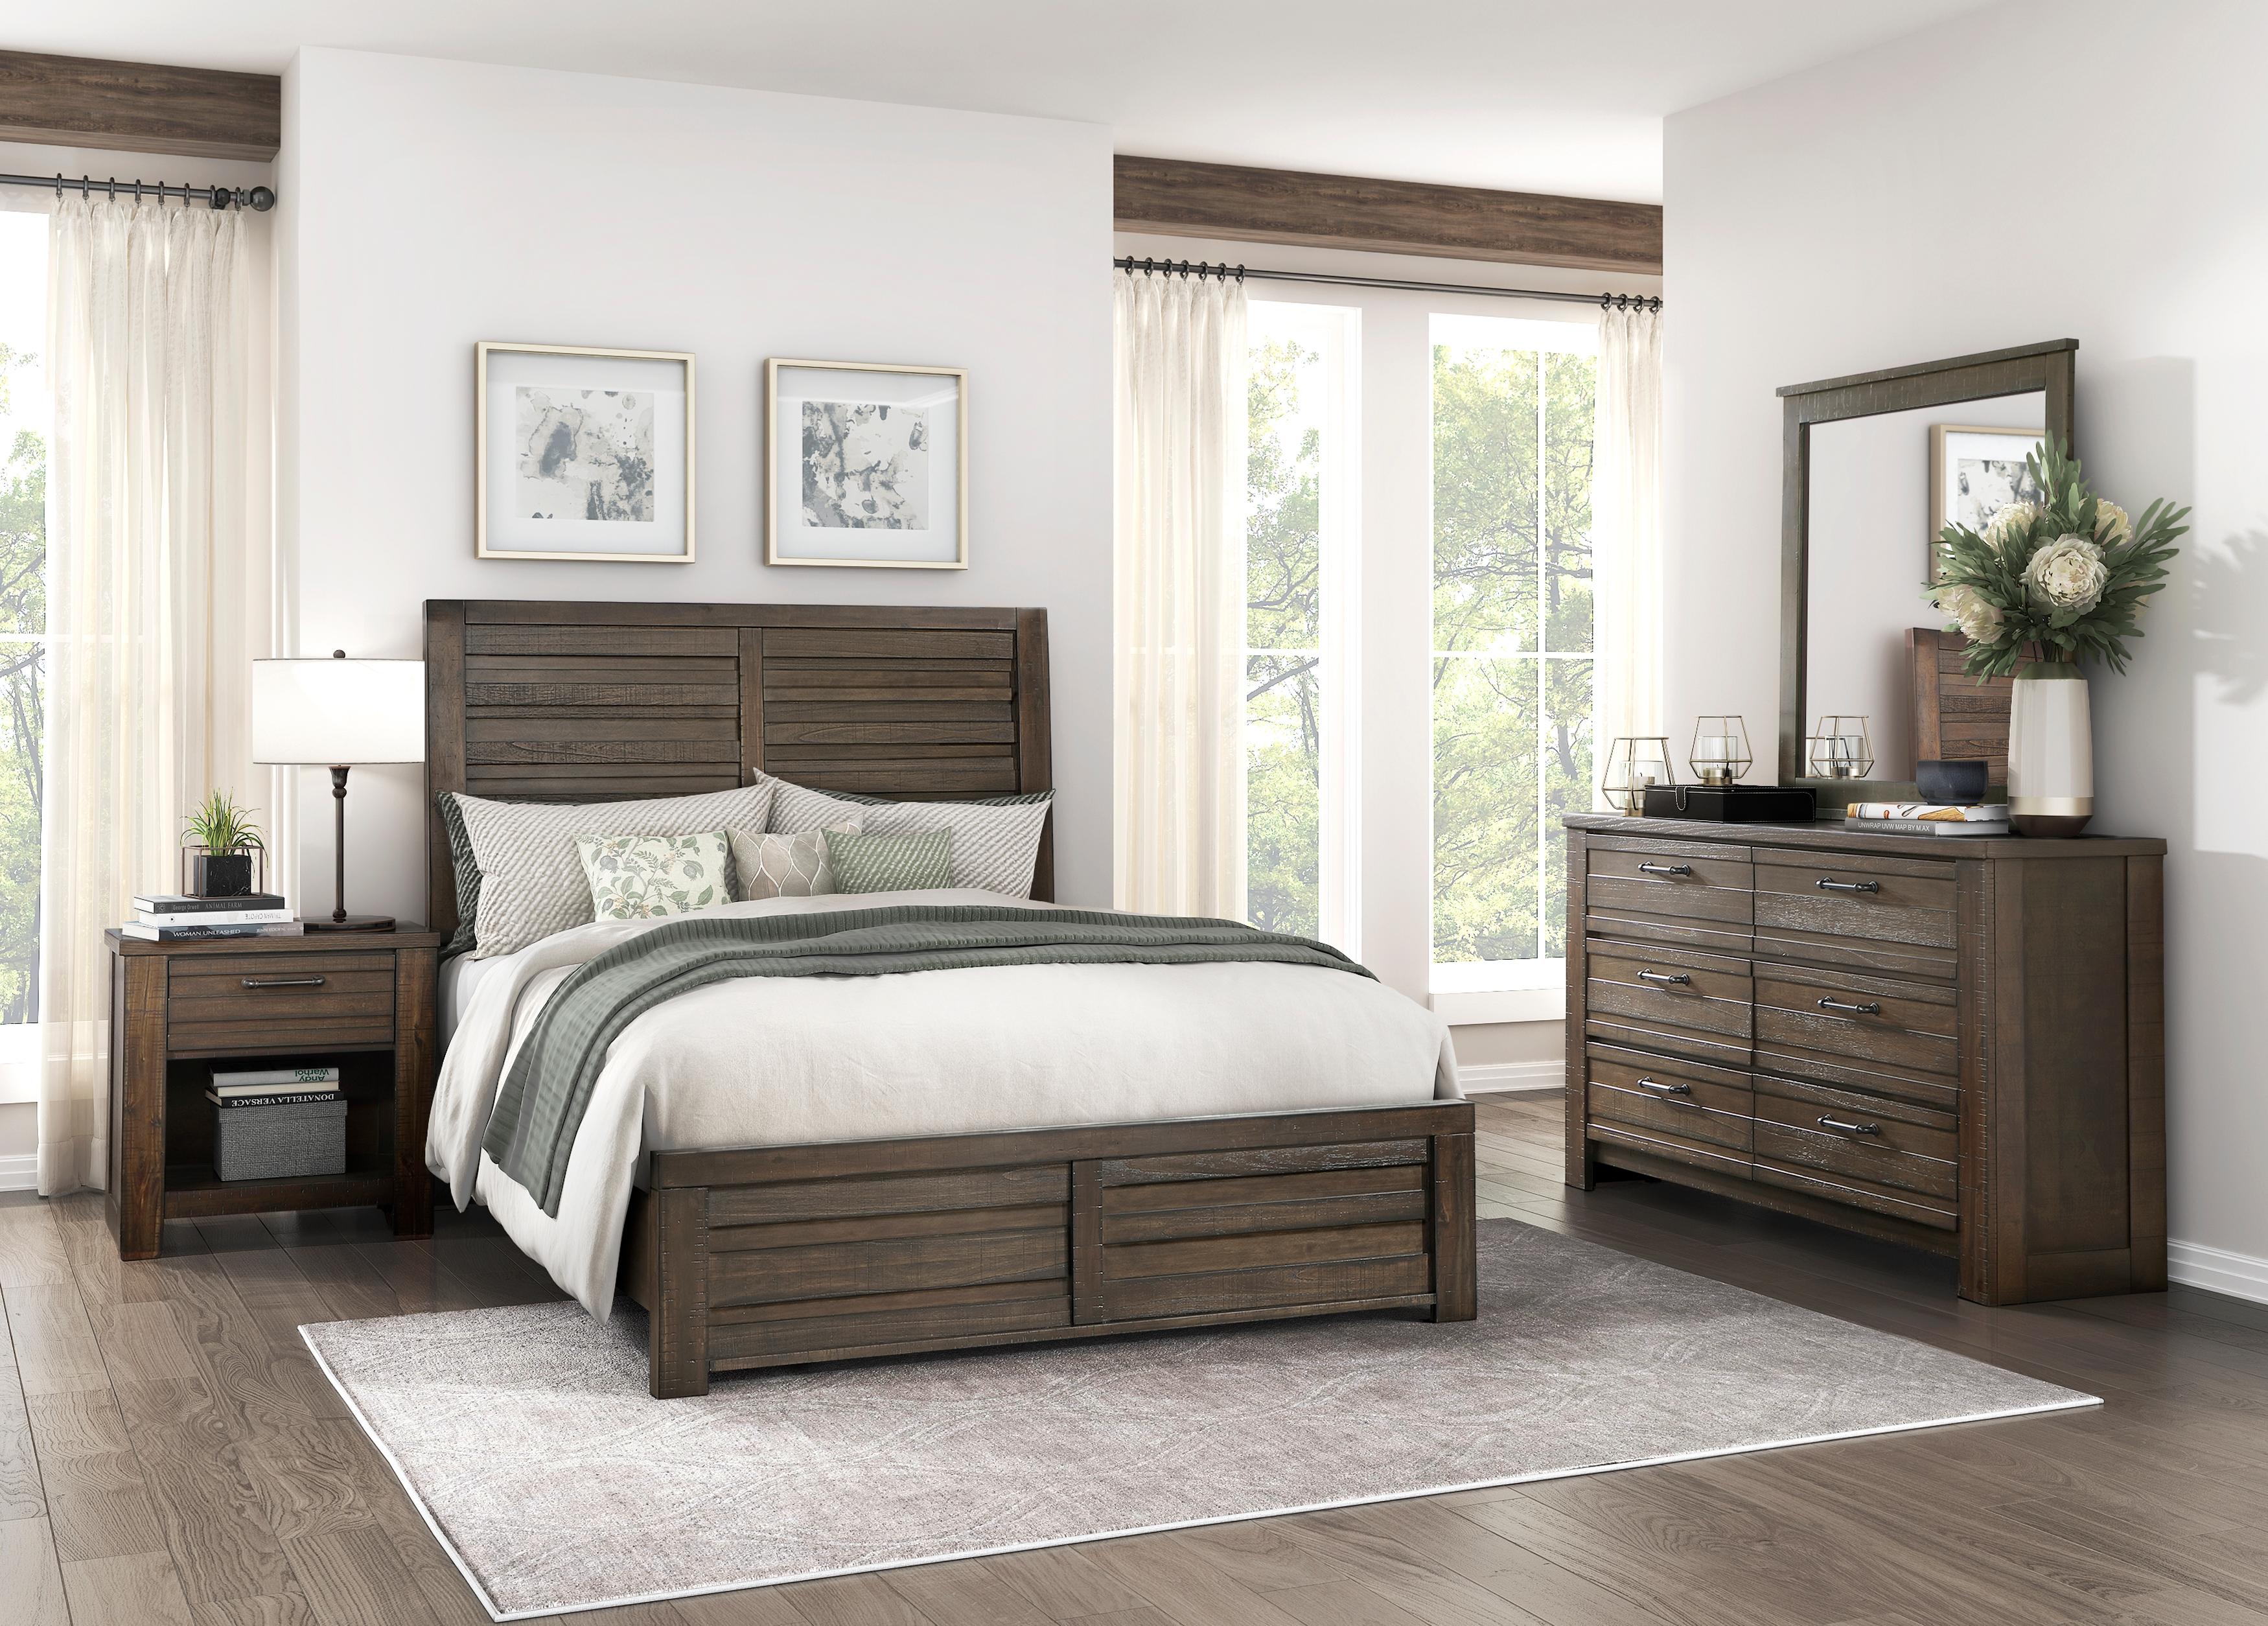 

    
Rustic Dark Brown Wood California King Panel Bedroom Set 6PCS Homelegance Longview 1498DBK-1CK-6PCS
